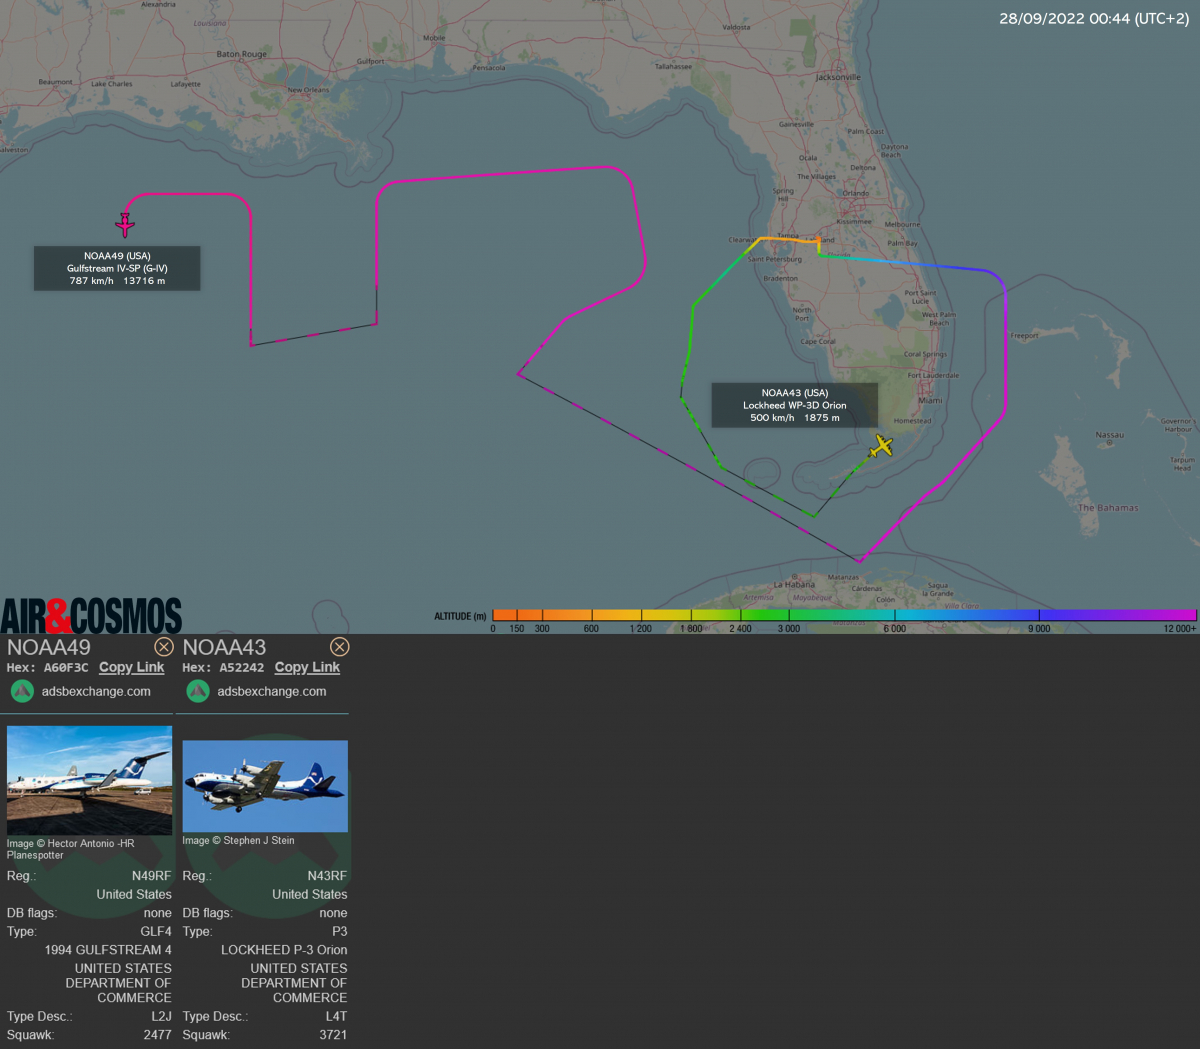 Suivi des avions de la NOAA : analyse météorologique du golfe du Mexique pour le Gulfstream IV et survol de l'ouragan pour le WP-3D.